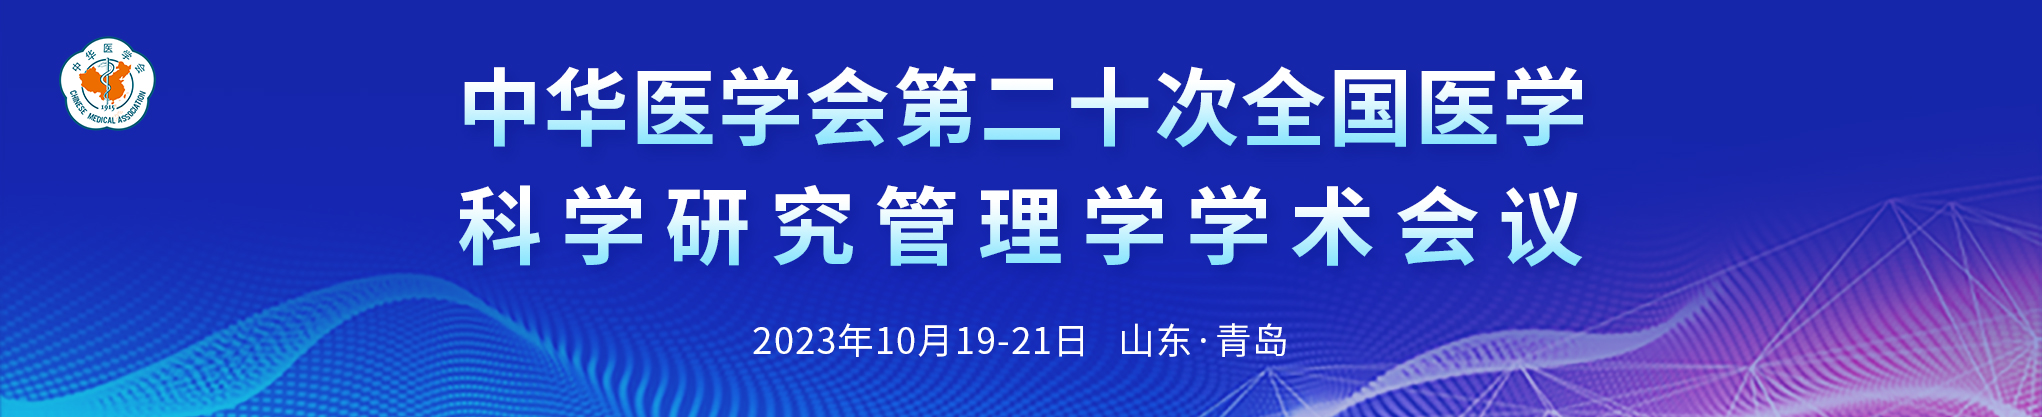 中华医学会第二十次全国医学科学研究管理学学术会议